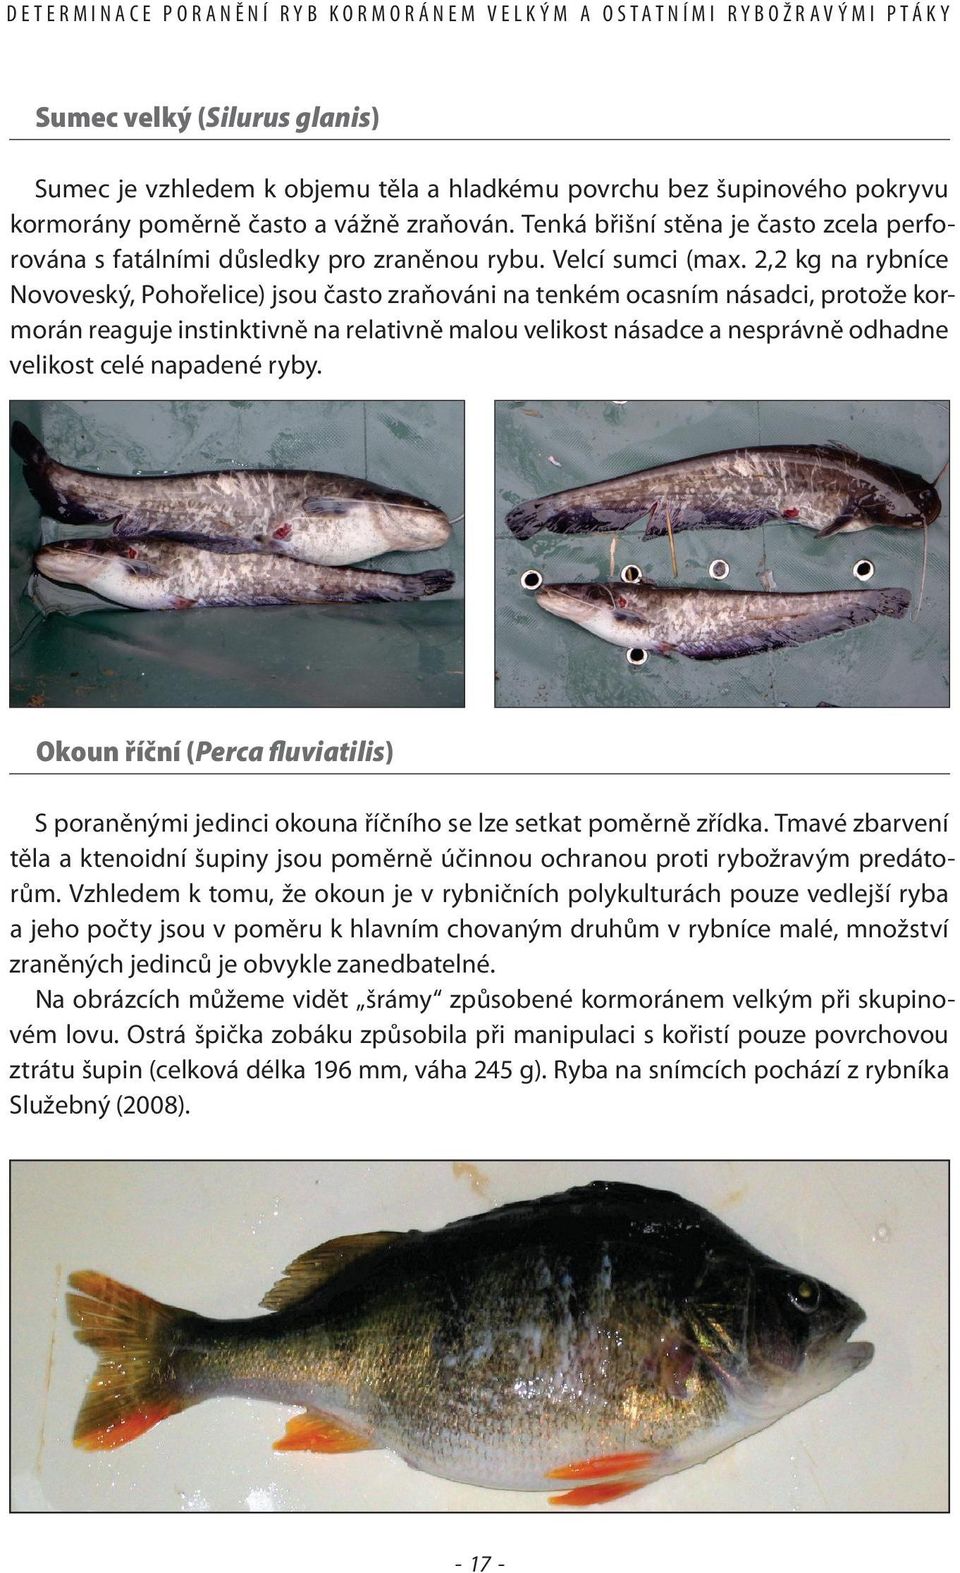 2,2 kg na rybníce Novoveský, Pohořelice) jsou často zraňováni na tenkém ocasním násadci, protože kormorán reaguje instinktivně na relativně malou velikost násadce a nesprávně odhadne velikost celé